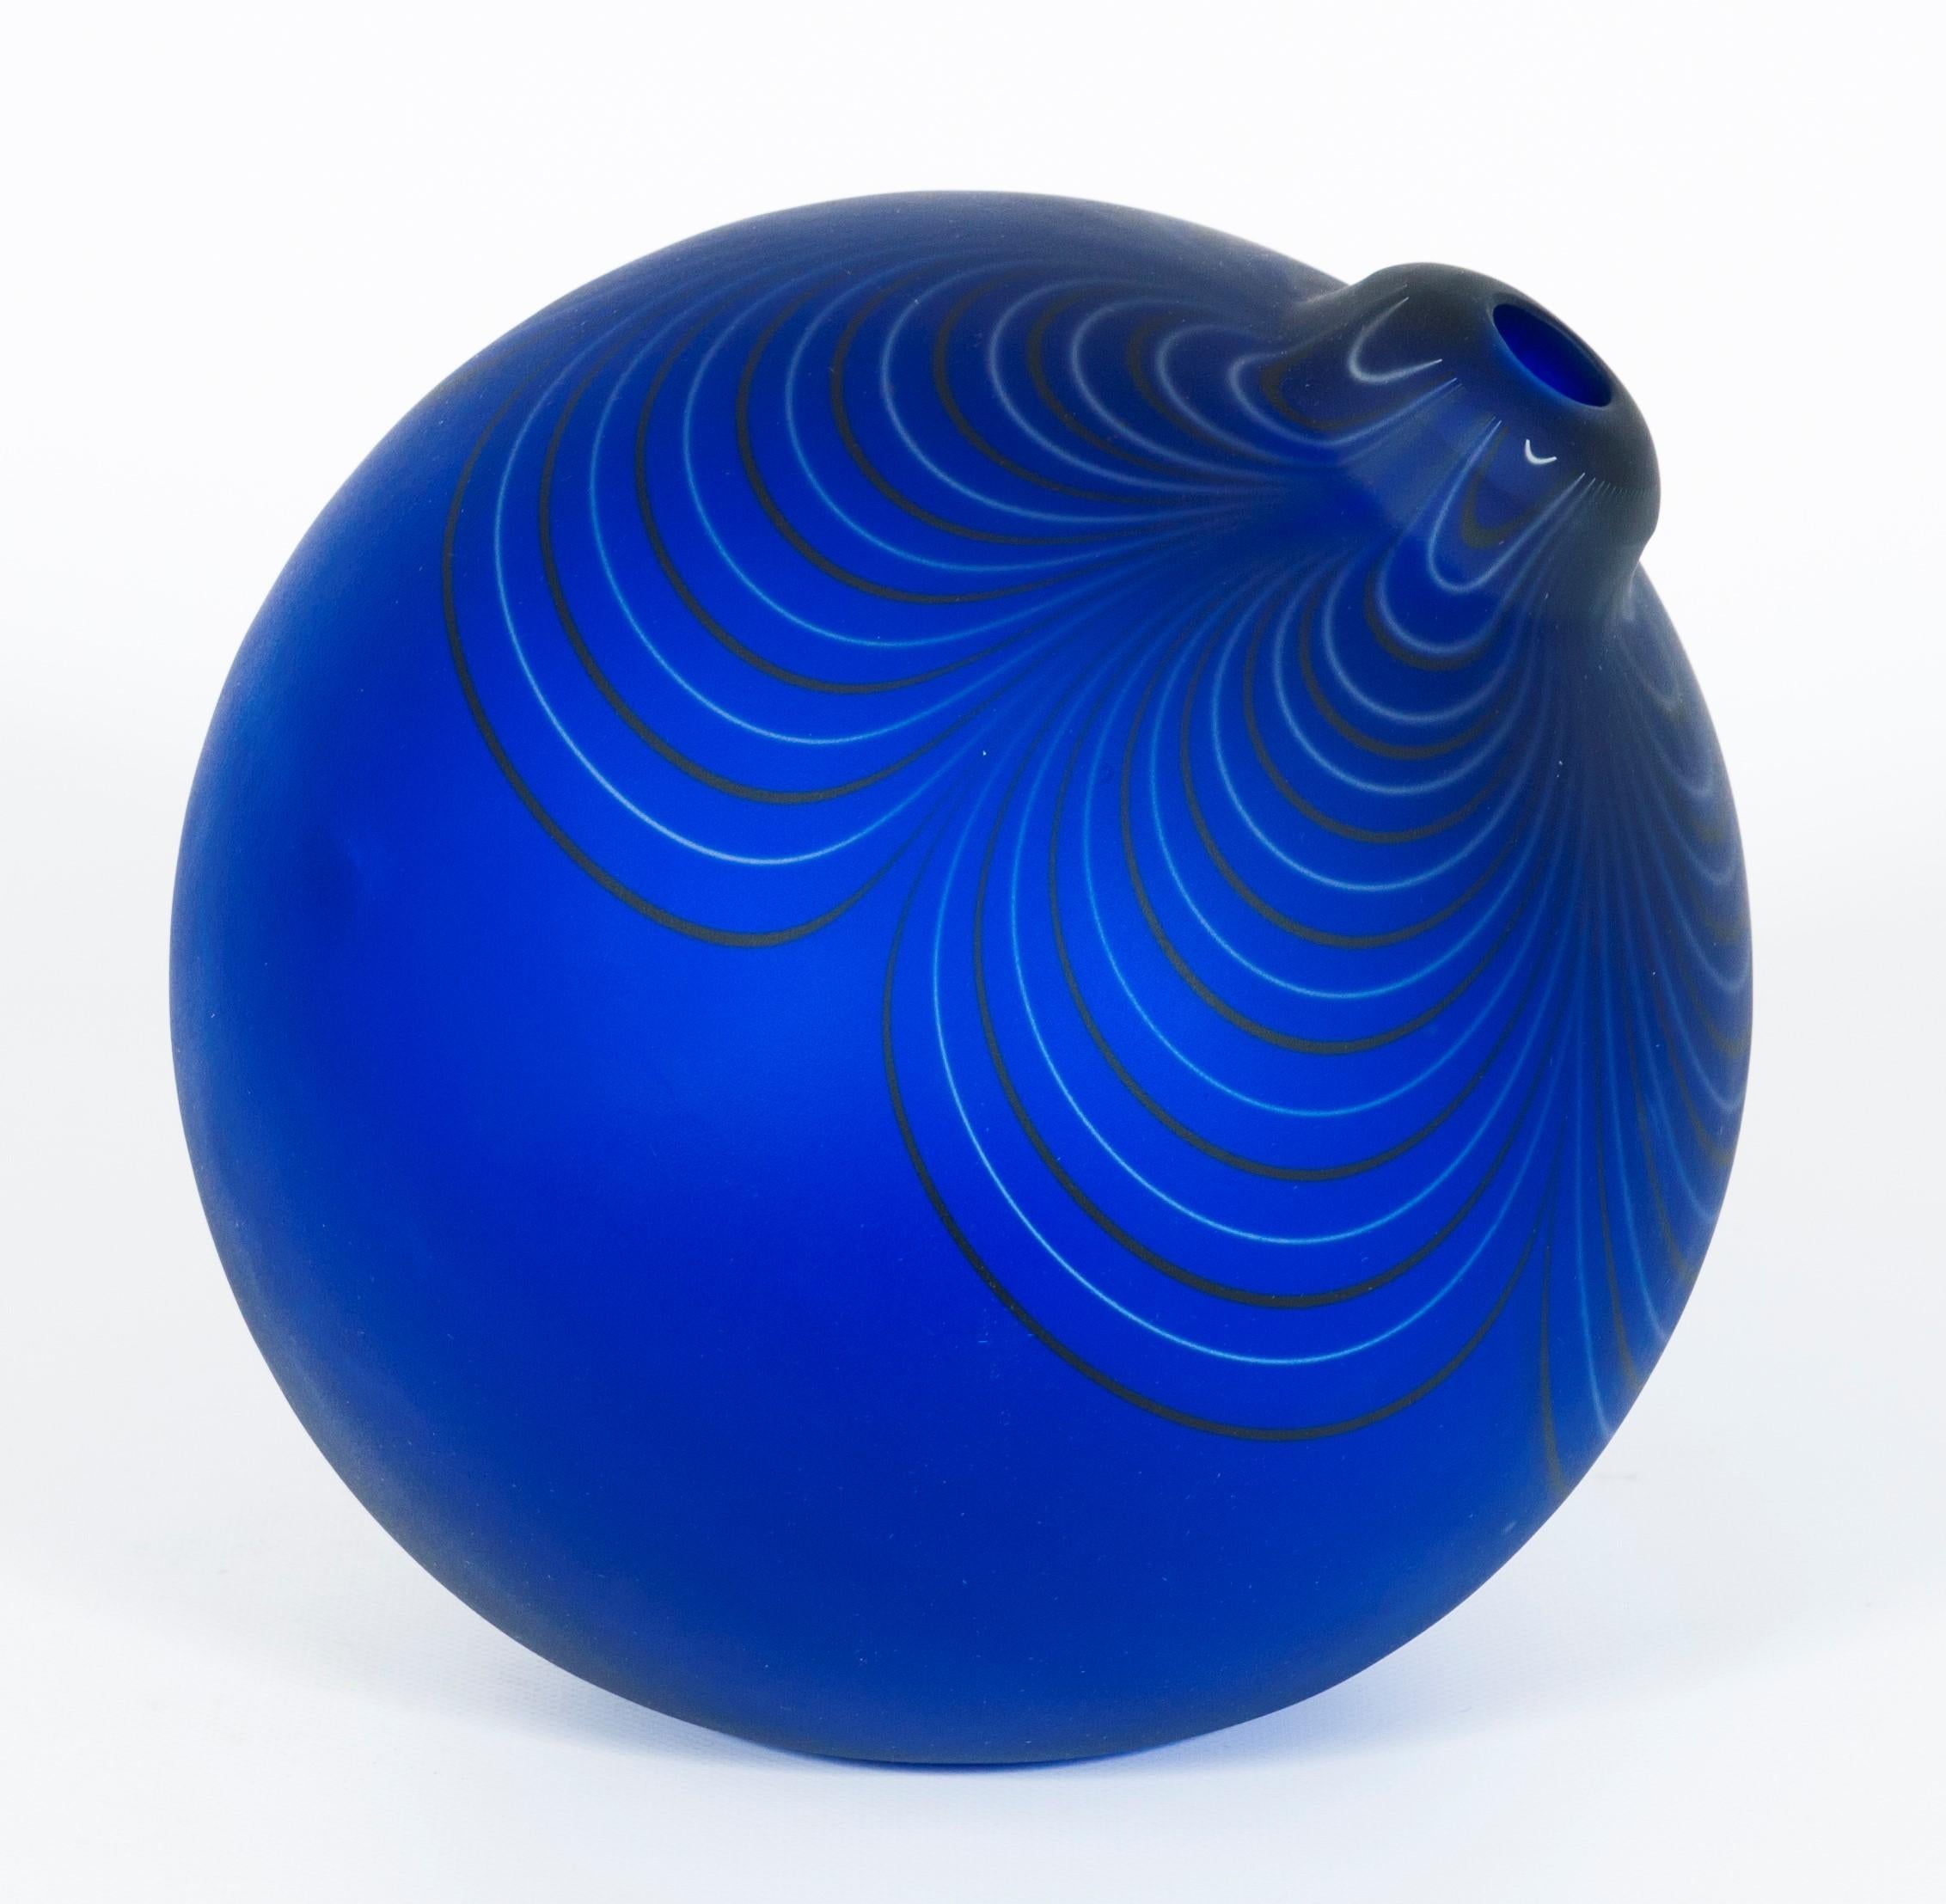 Design Murano Glas Blaue Kugel von Alberto Donà, Italien, 1980er Jahre.
Dieses einzigartige Kunstwerk ist einfach hervorragend. Ein Vintage-Meisterwerk des bekannten italienischen Künstlers Alberto Donà, das in den 1980er Jahren auf der Insel